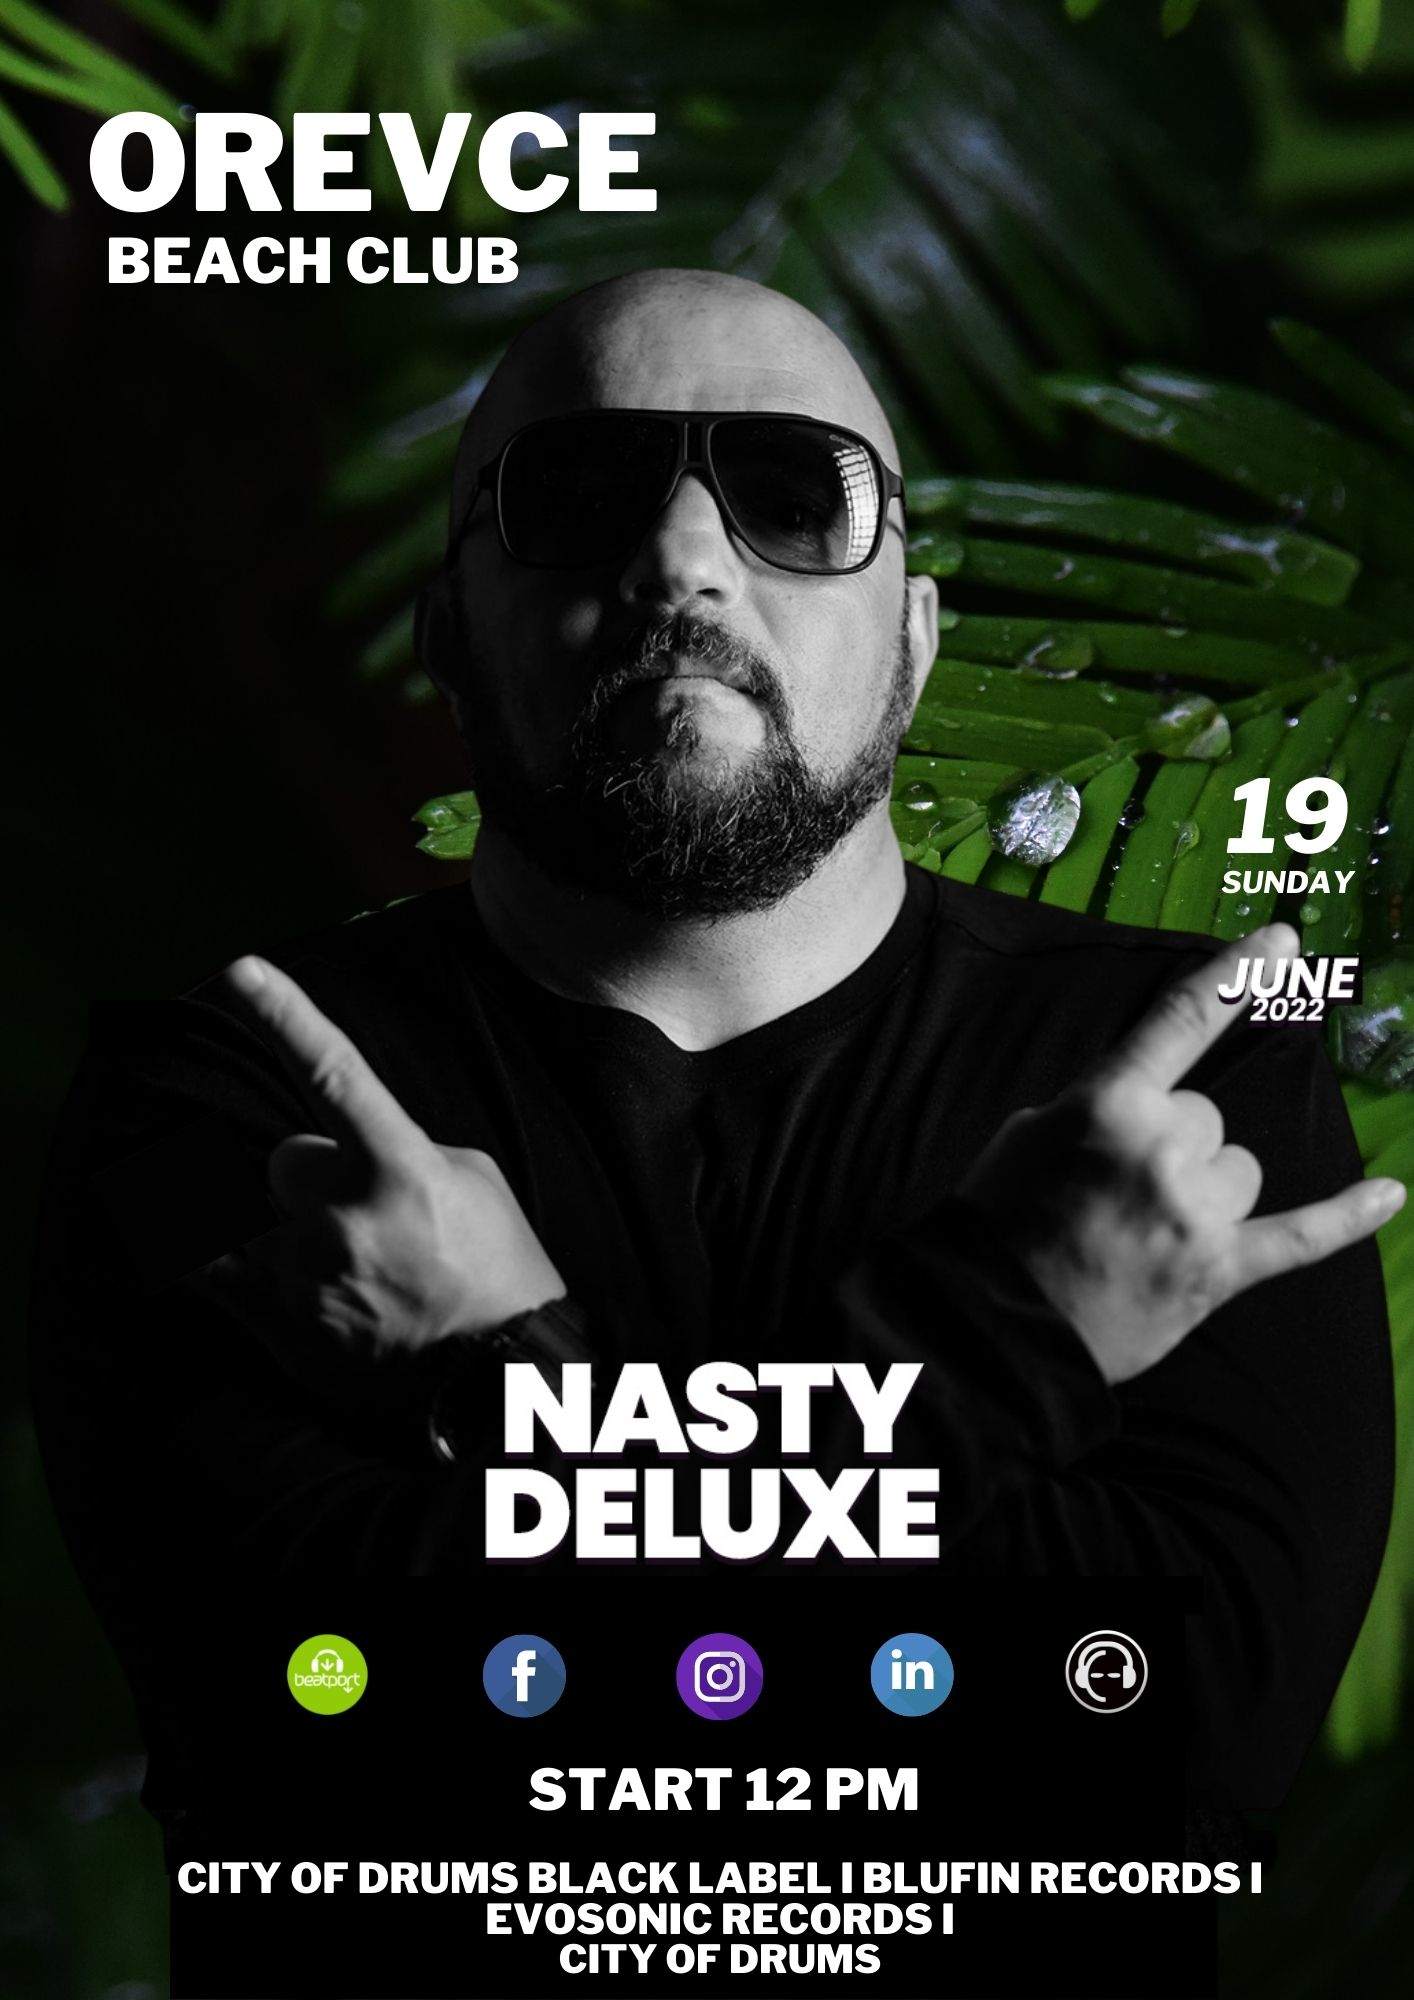 DJ Nasty Deluxe - Orevce Beach Club - フライヤー表